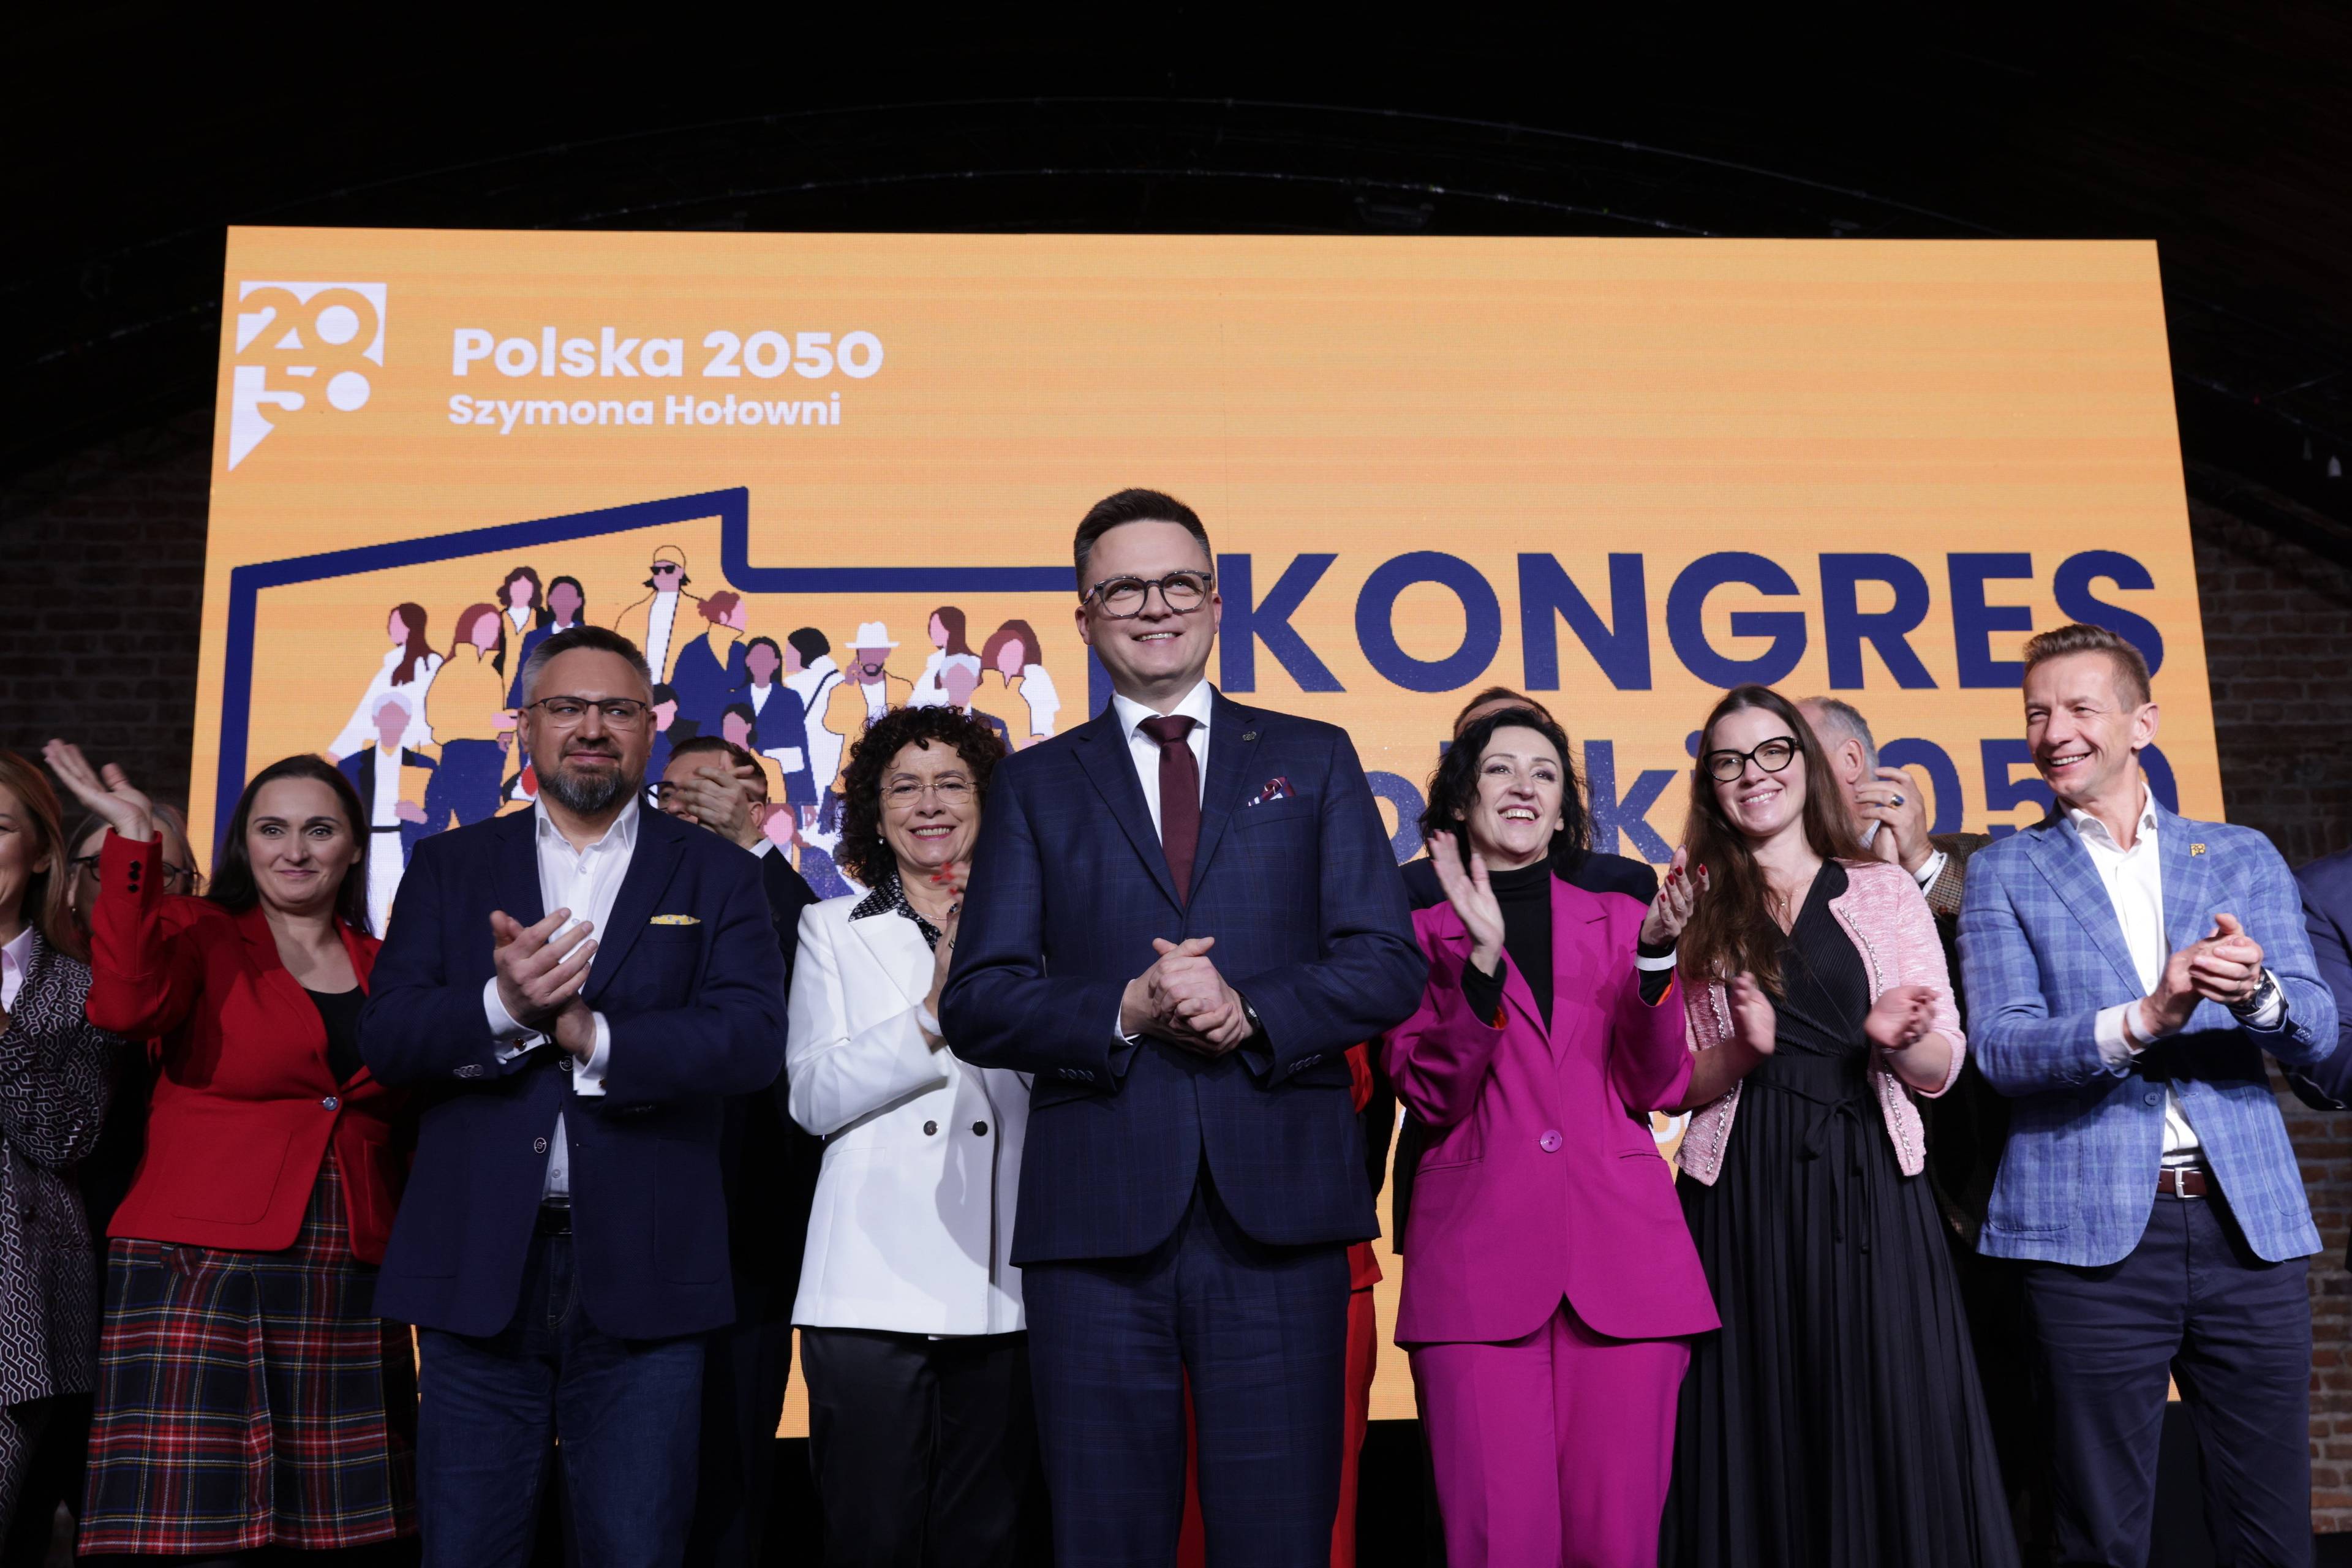 Grupa osób na scenie, w tkle napis Kongres Polska 2050